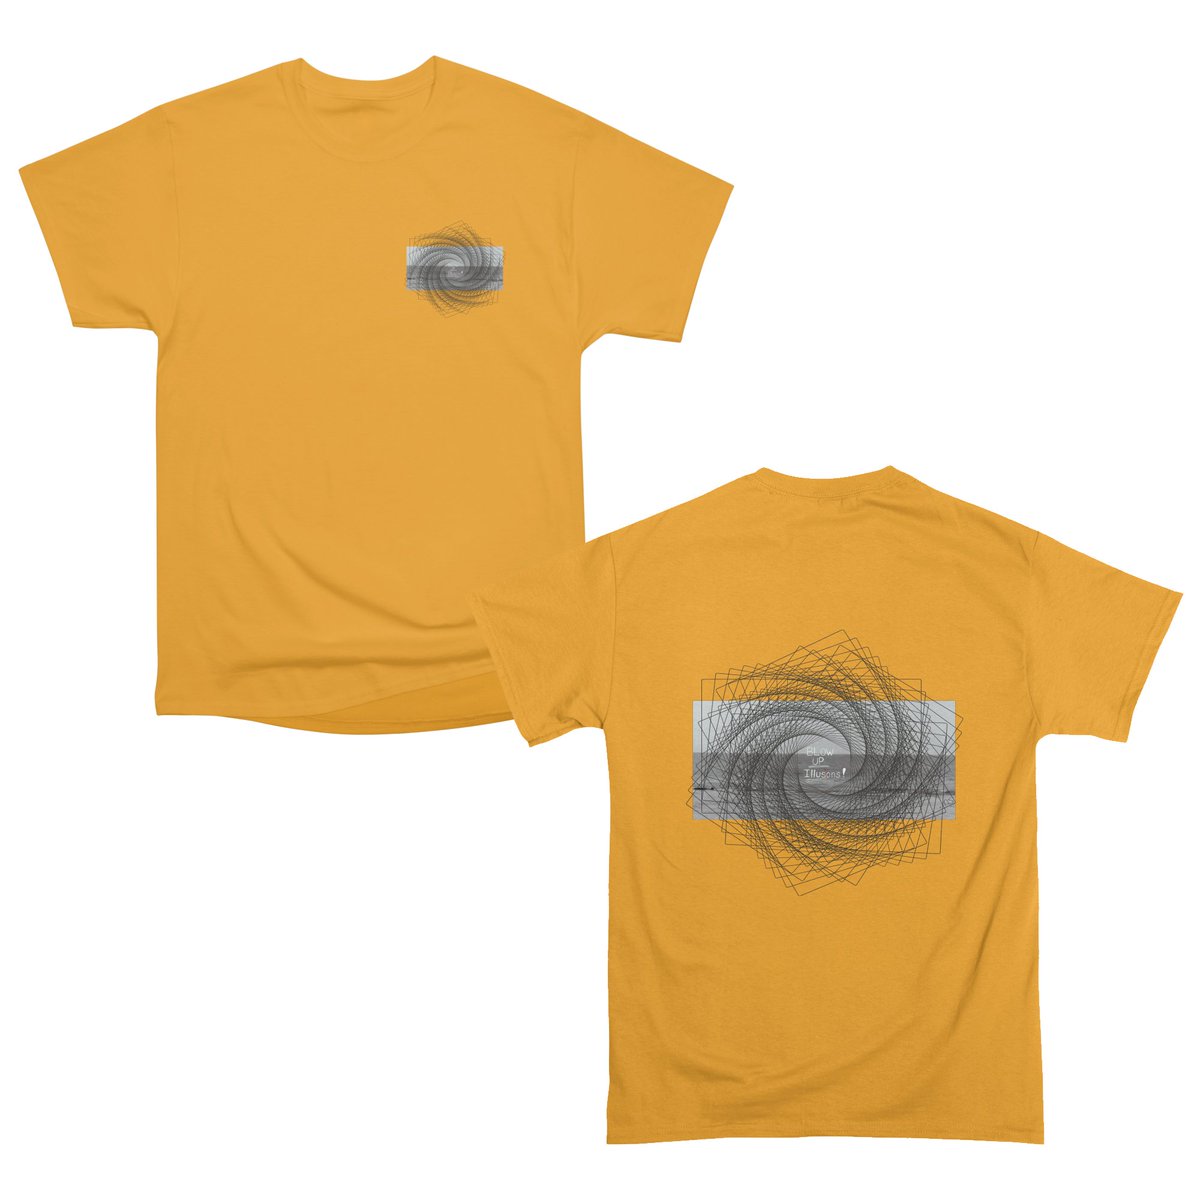 #tshirtstore #tshirtprinting #tshirt #threadless @threadless annasavart.threadless.com/search